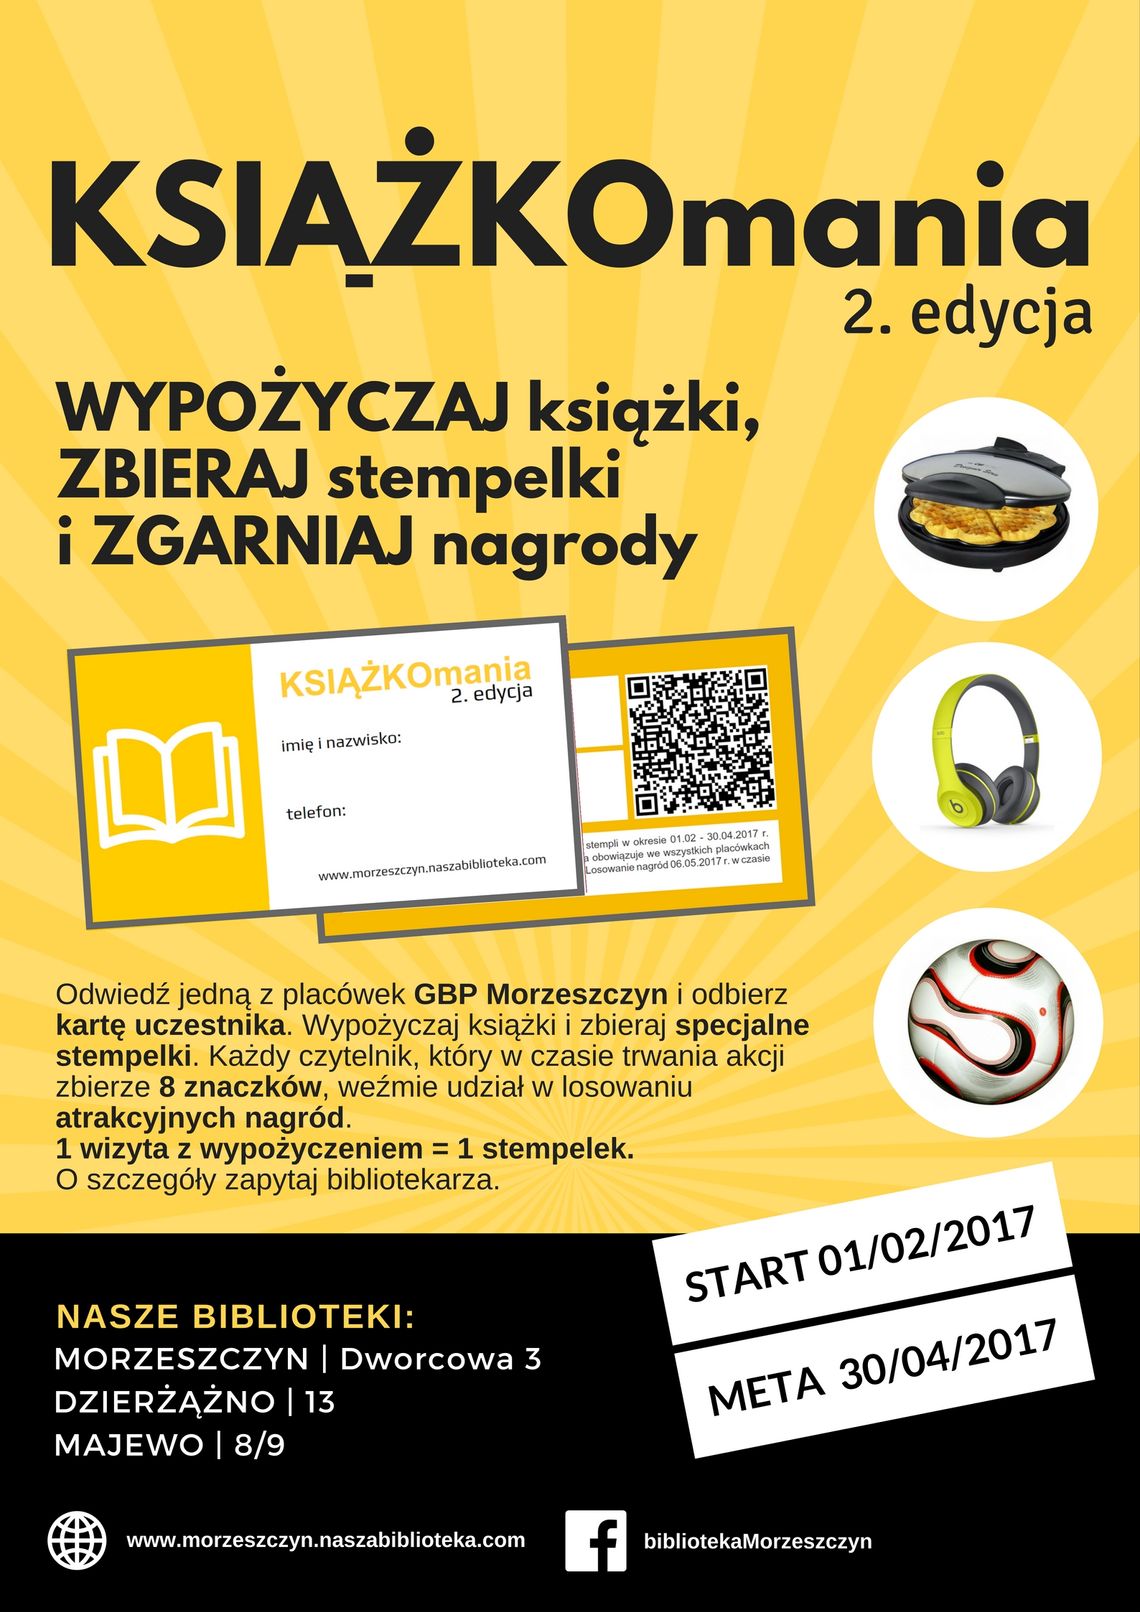 KSIĄŻKOmania - 2. edycja!